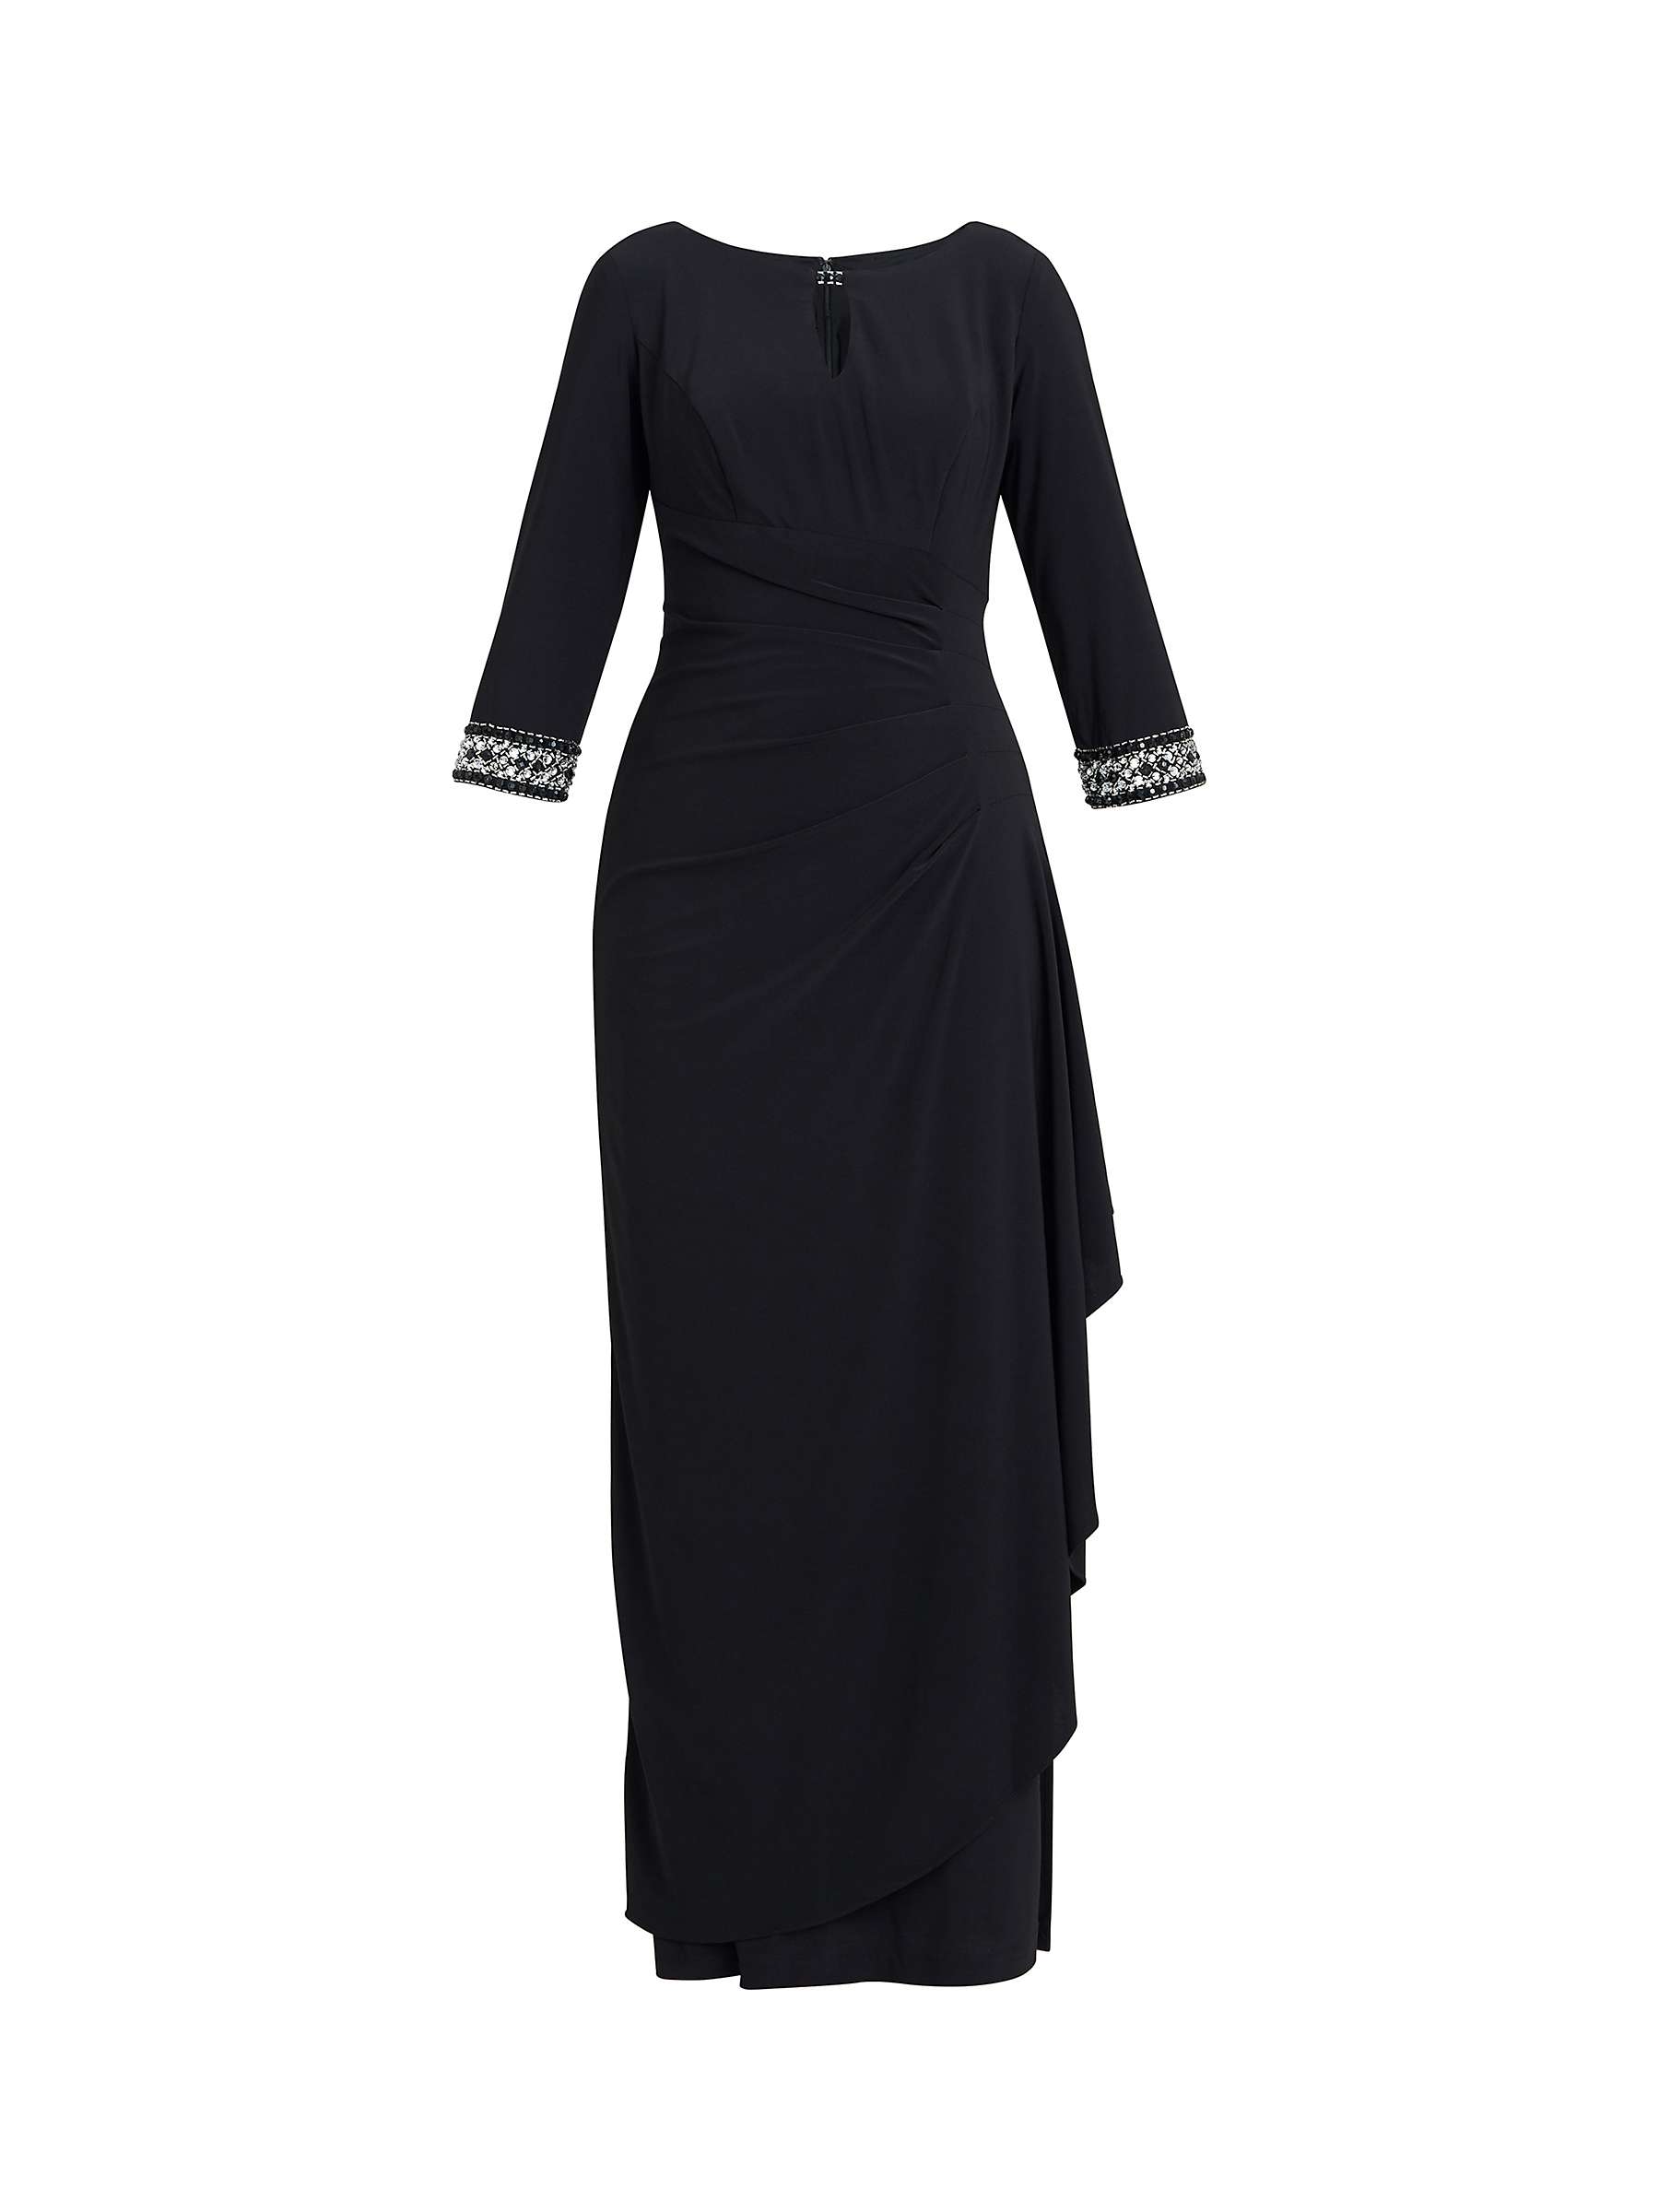 Buy Gina Bacconi Jean Embellished A-Line Maxi Dress, Black Online at johnlewis.com